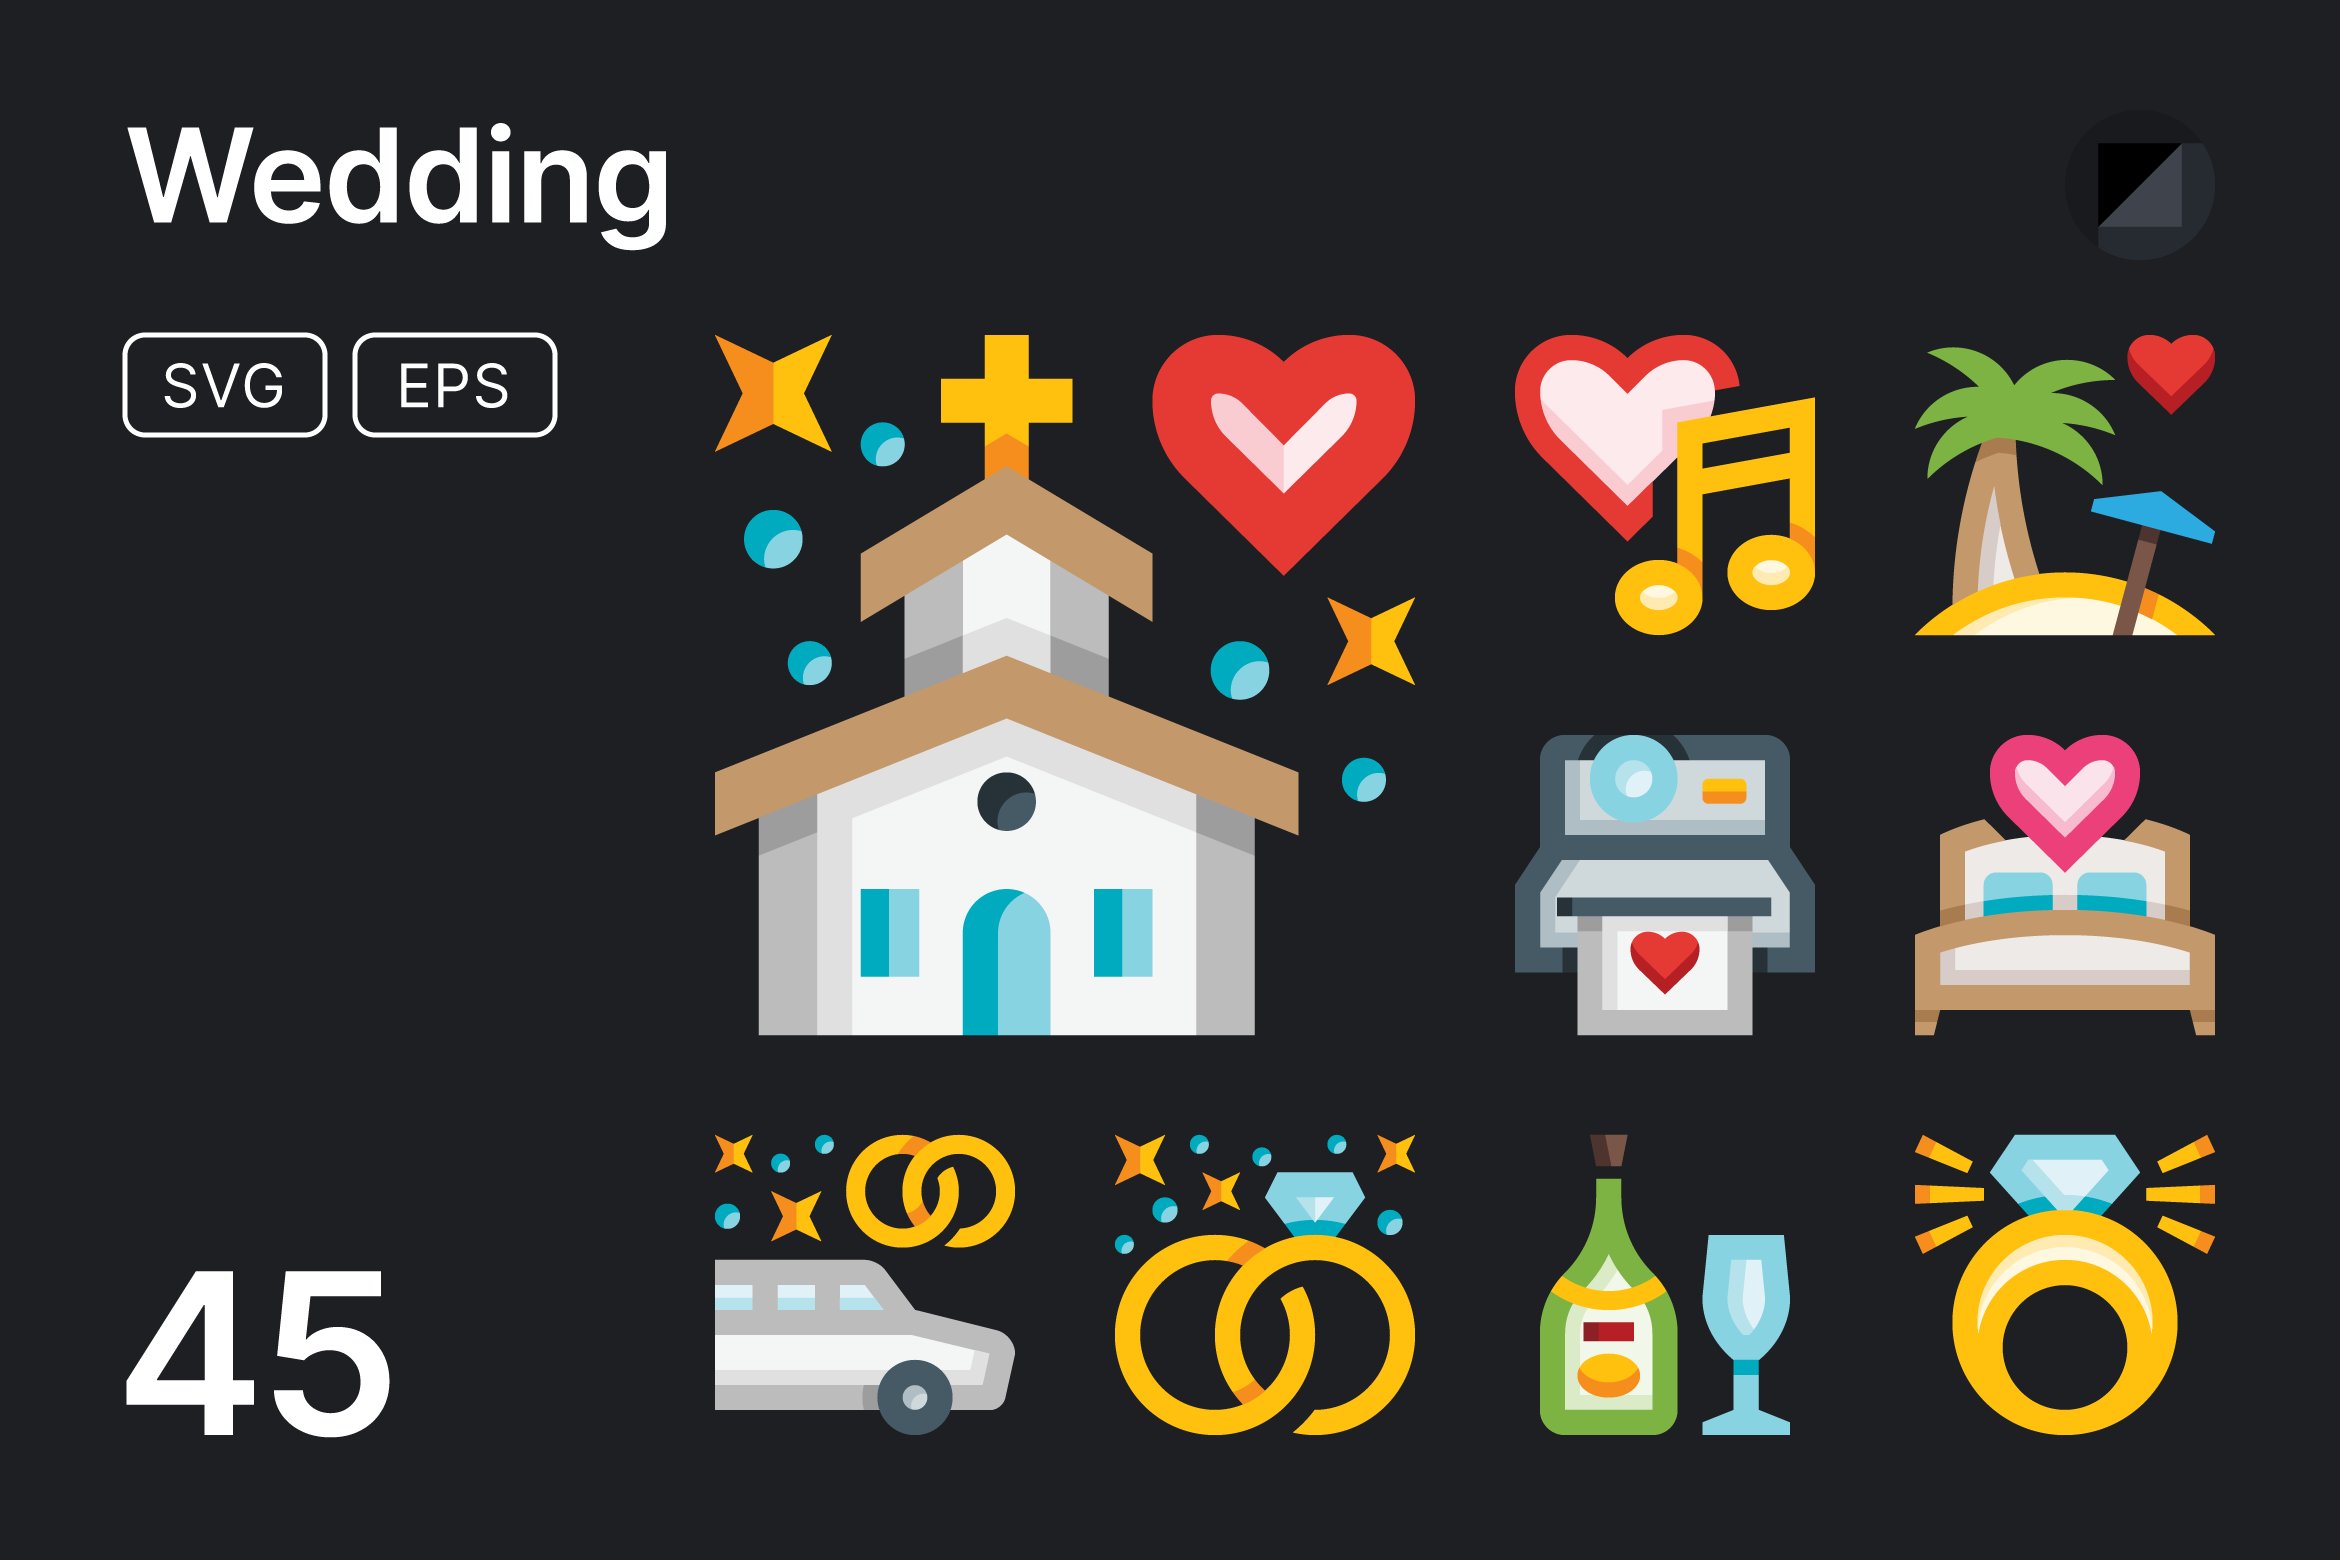 Basicons / Holidays / Wedding Icons cover image.